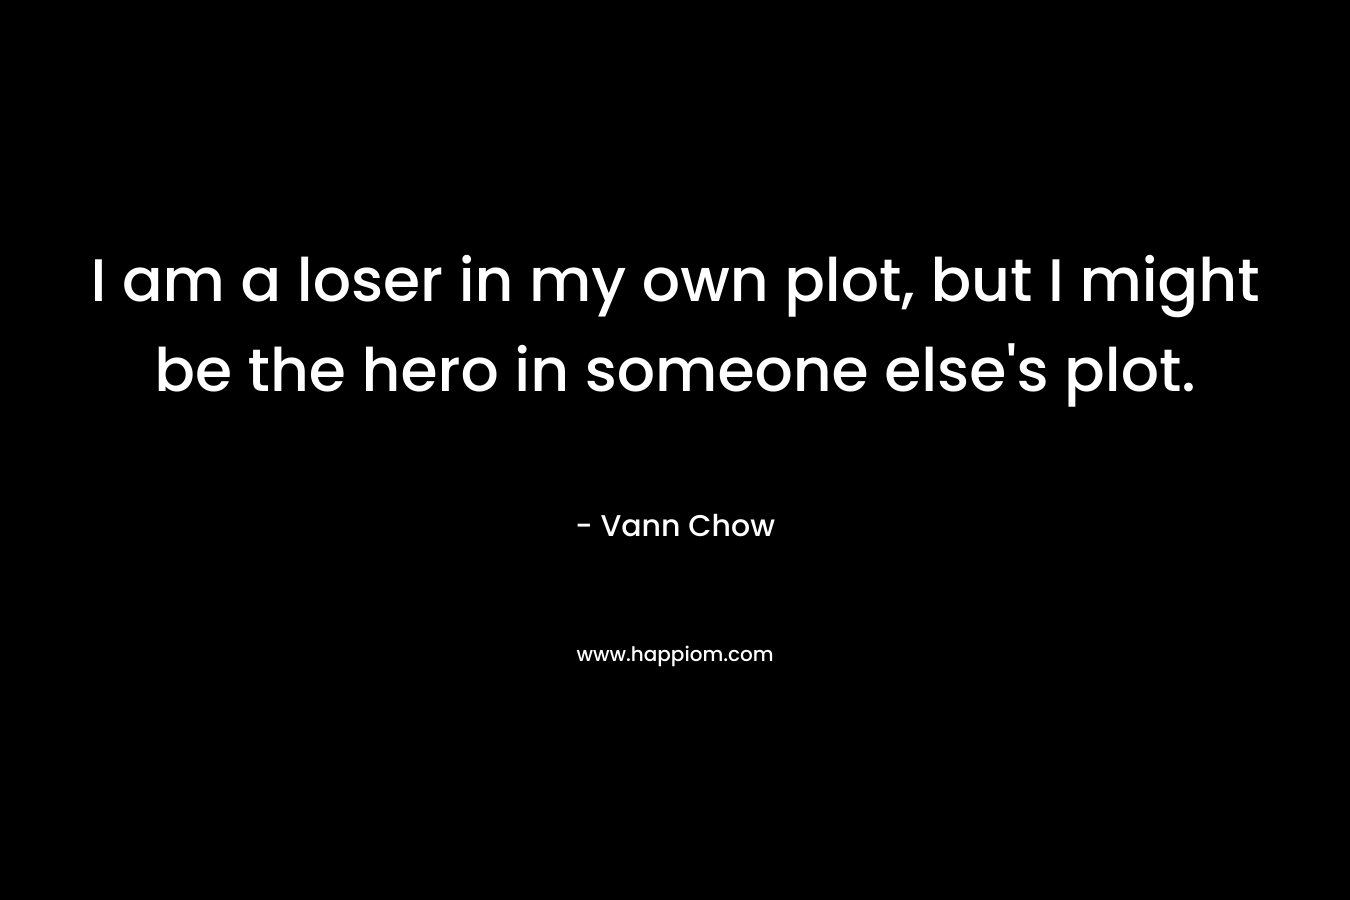 I am a loser in my own plot, but I might be the hero in someone else's plot.